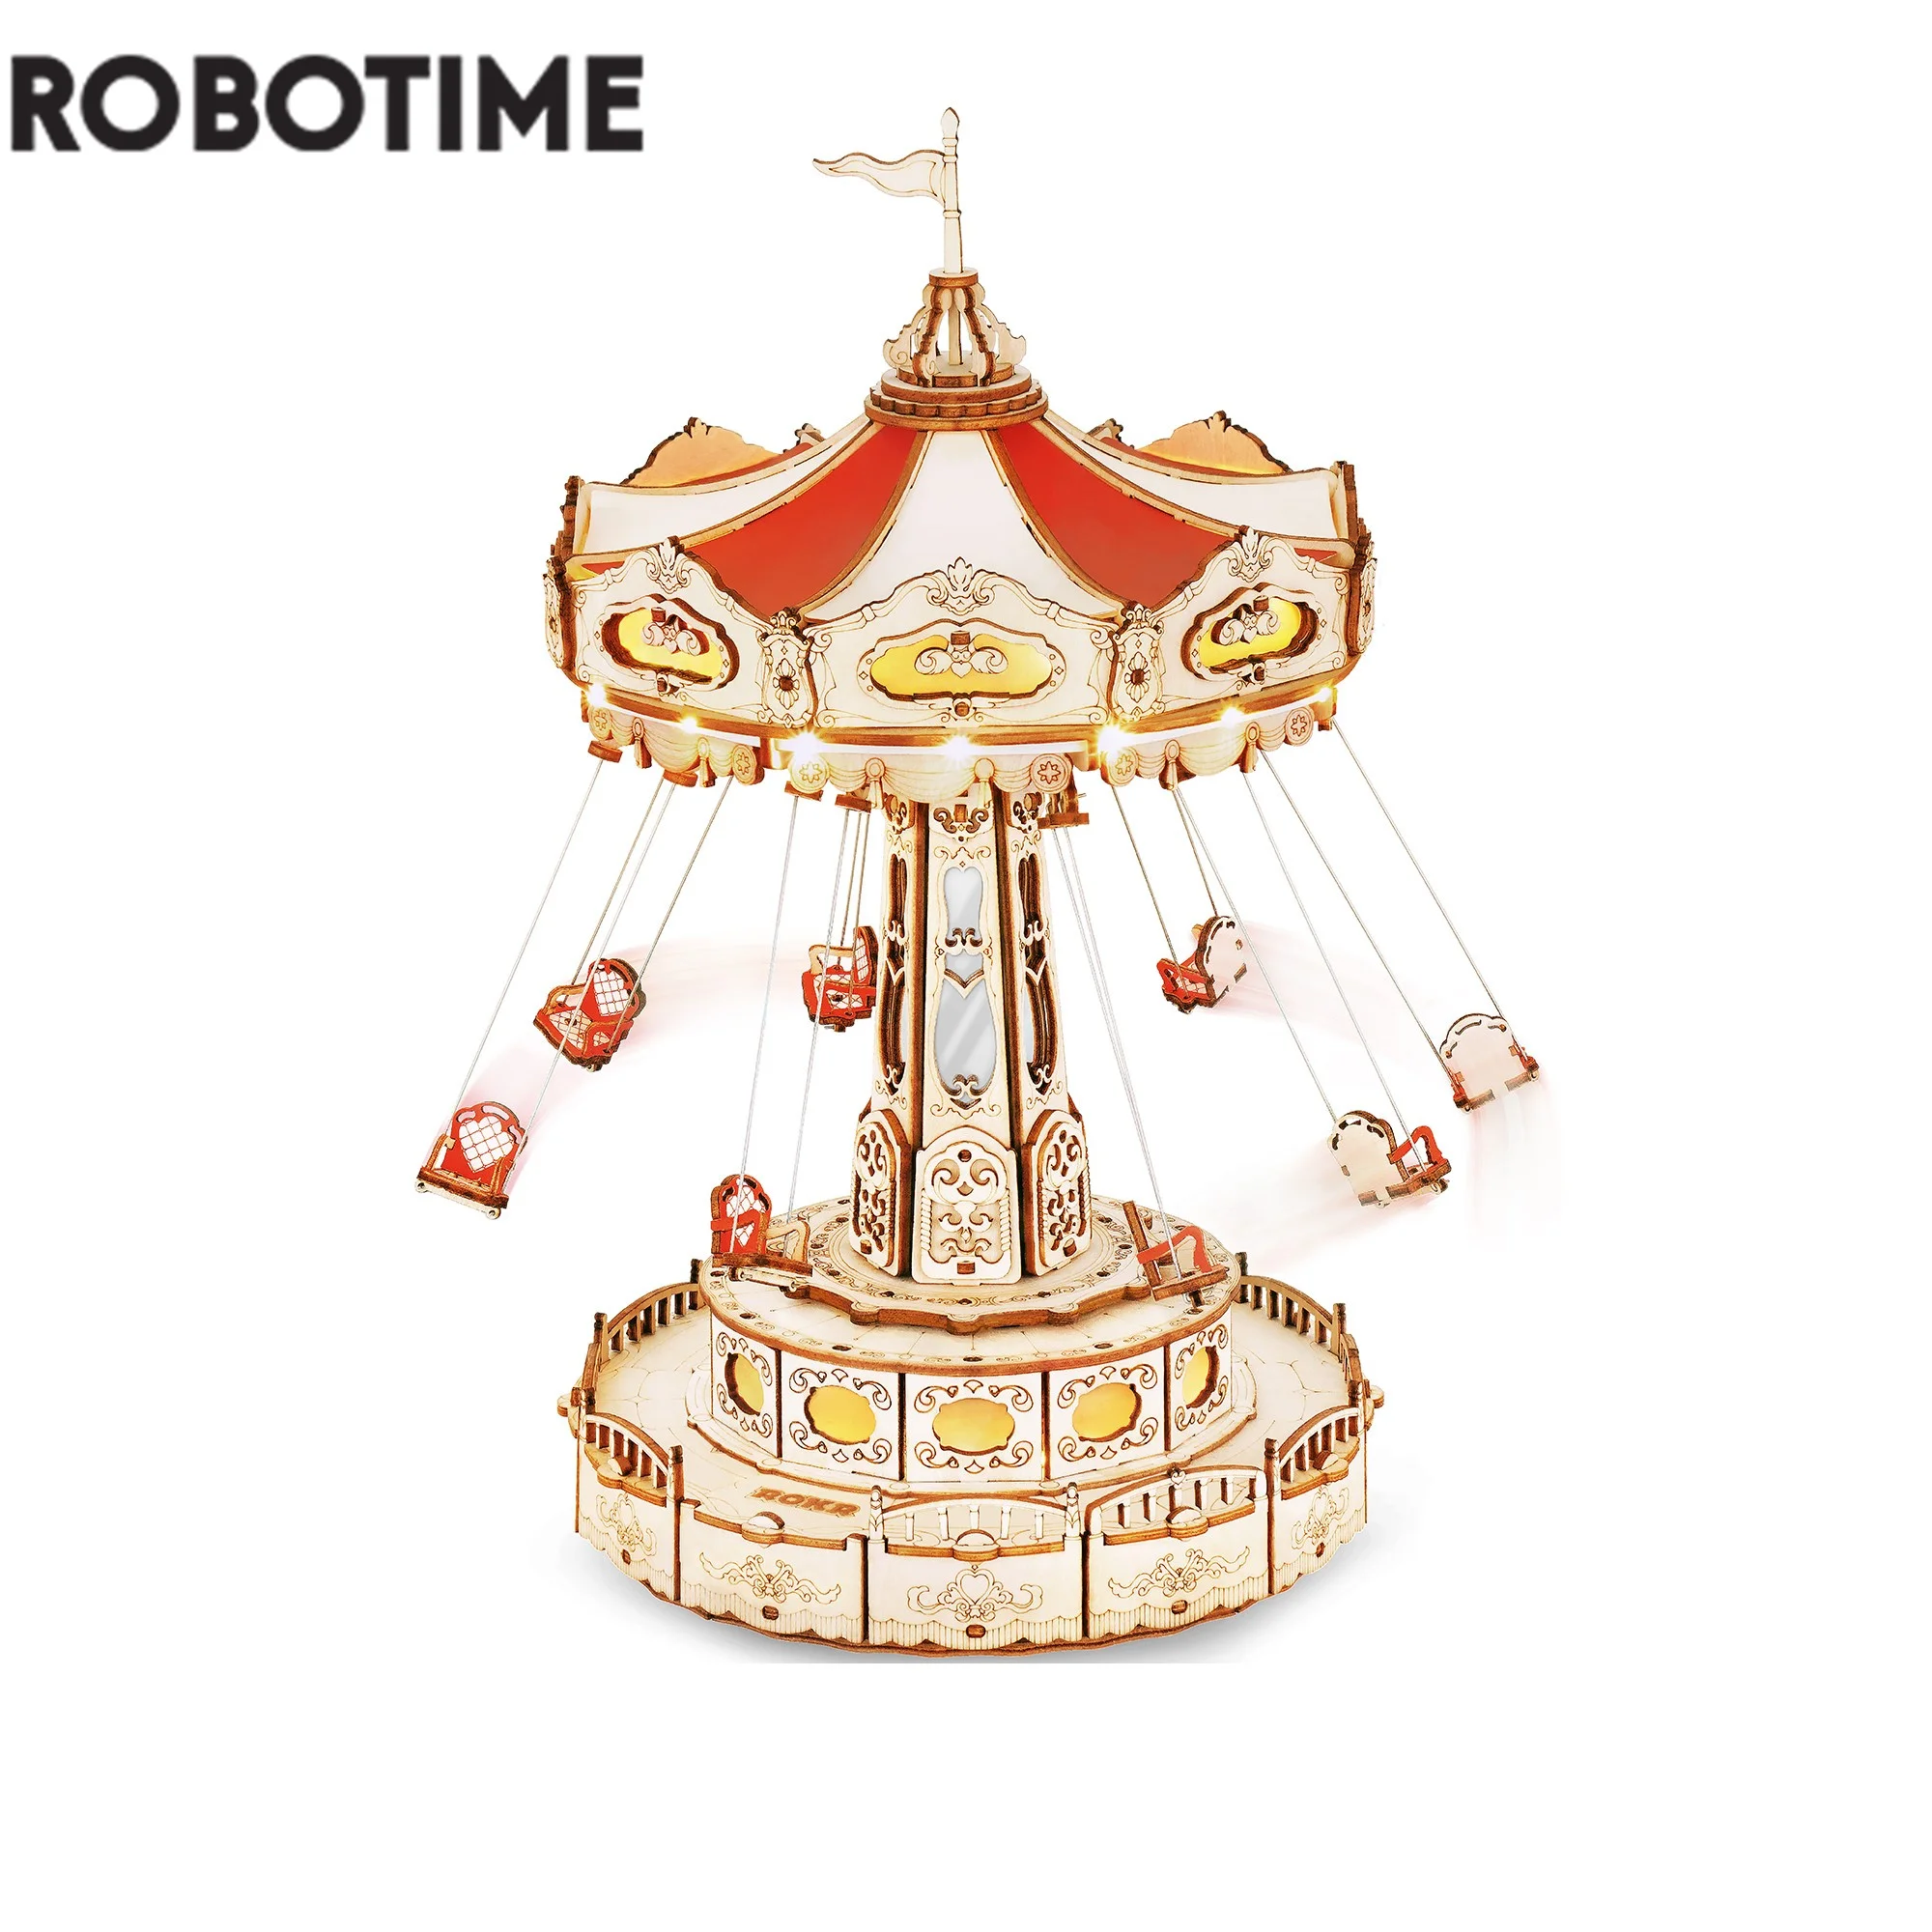 Robotime-bloques de construcción de caja de música para niños y adultos, juguete de construcción en 3D de madera EA02 con diseño de Rokr Swing Ride